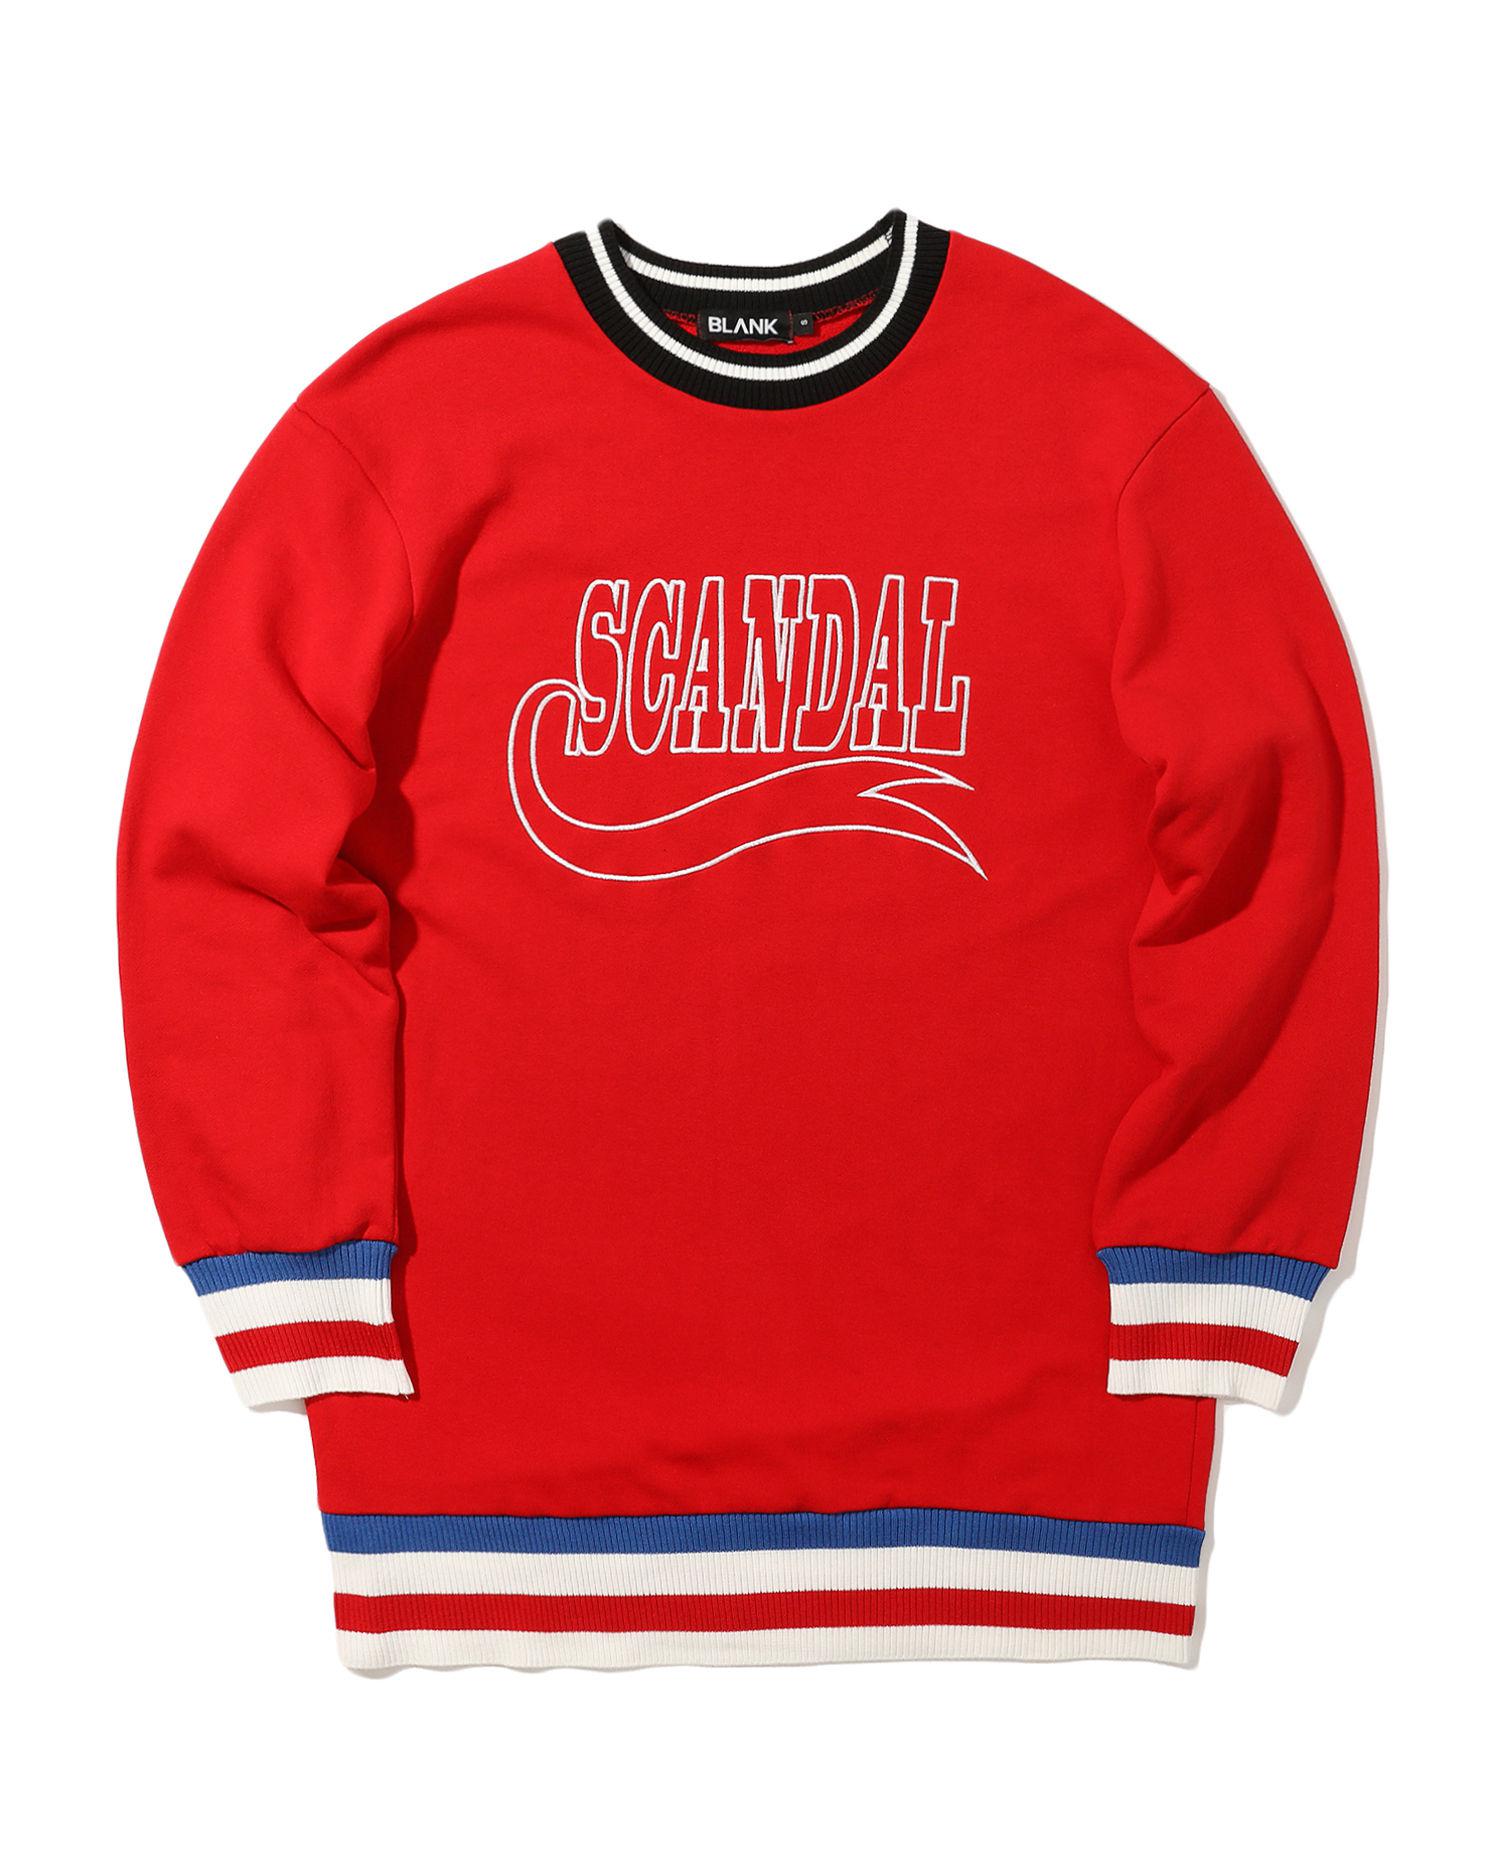 "SCANDAL" stripe hem sweatshirt by BLANK